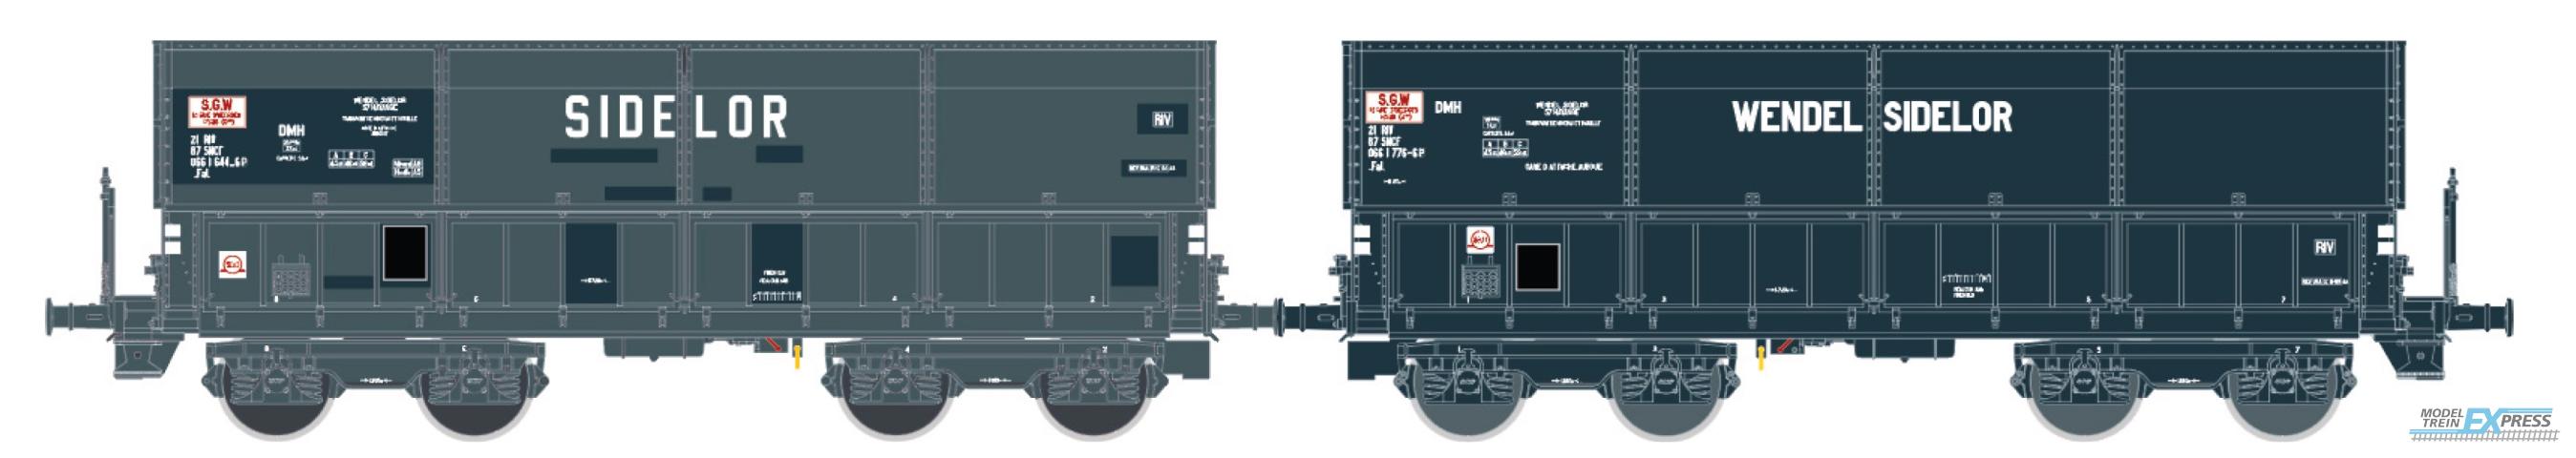 LS Models 31111 DMH + DMH, "Sidelor / Wendel Sidelor" / Ep. IV / SNCF / HO / DC / 2 P.